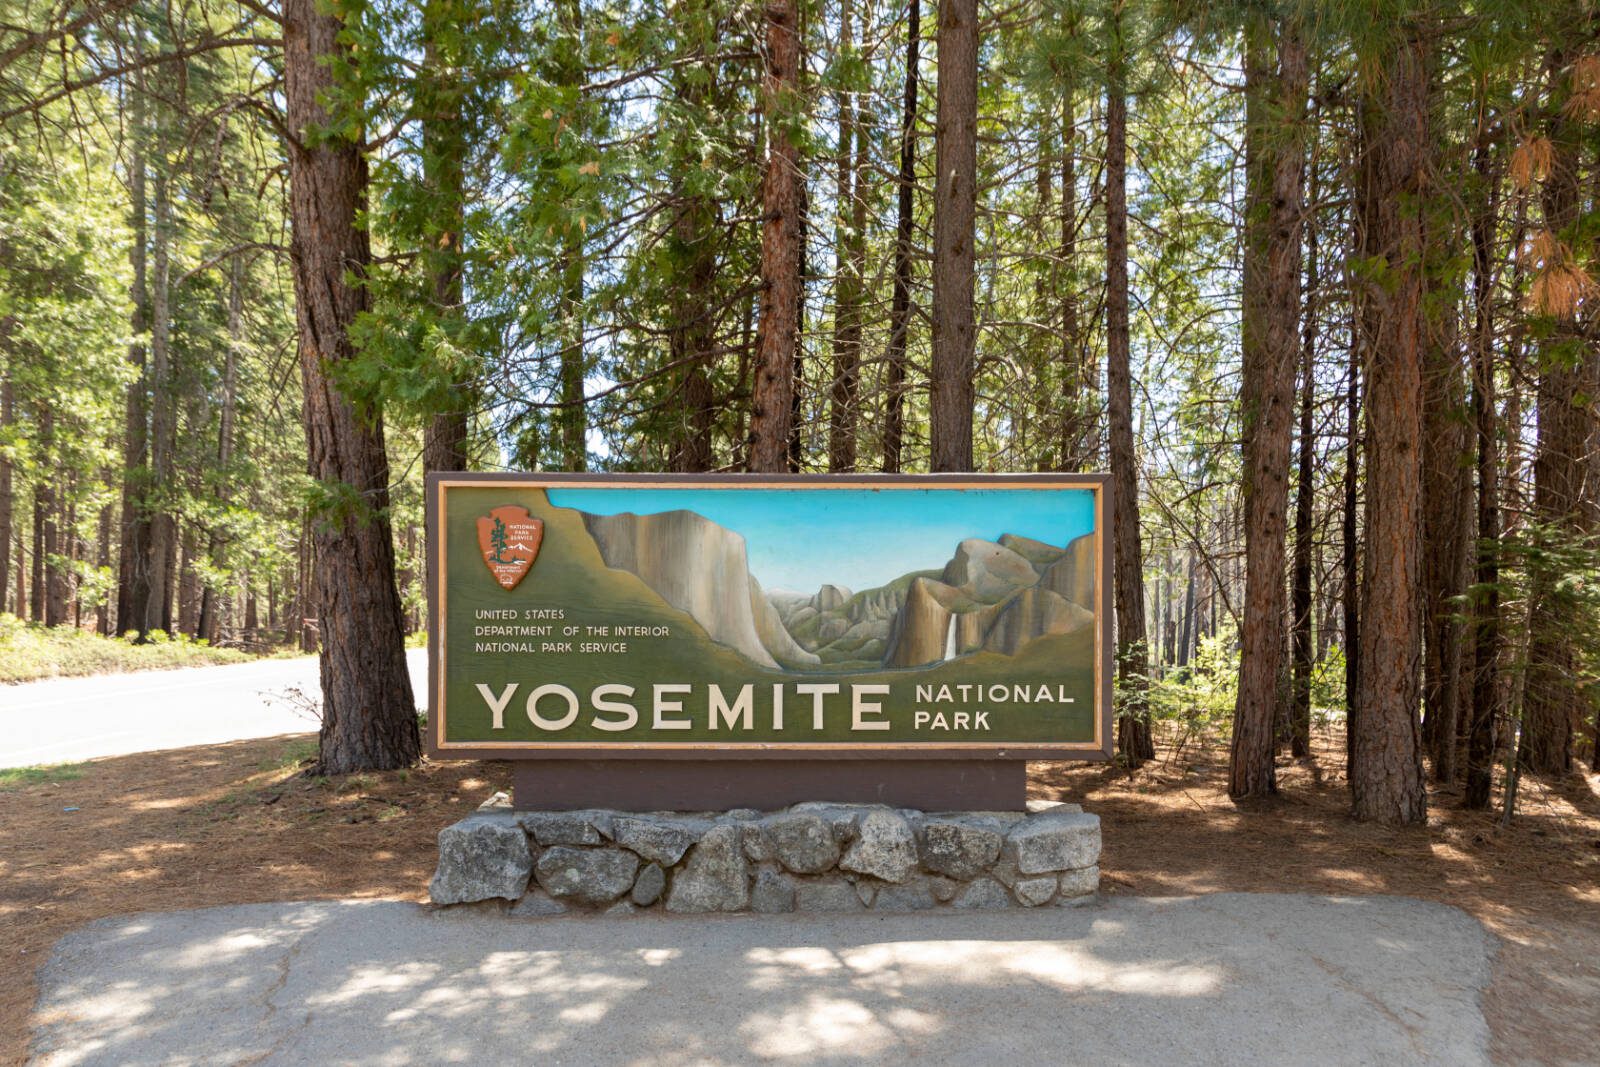 The Yosemite Valley Loop Trail, in California’s Yosemite National Park showcases famous landmarks like El Capitan and Yosemite Falls.